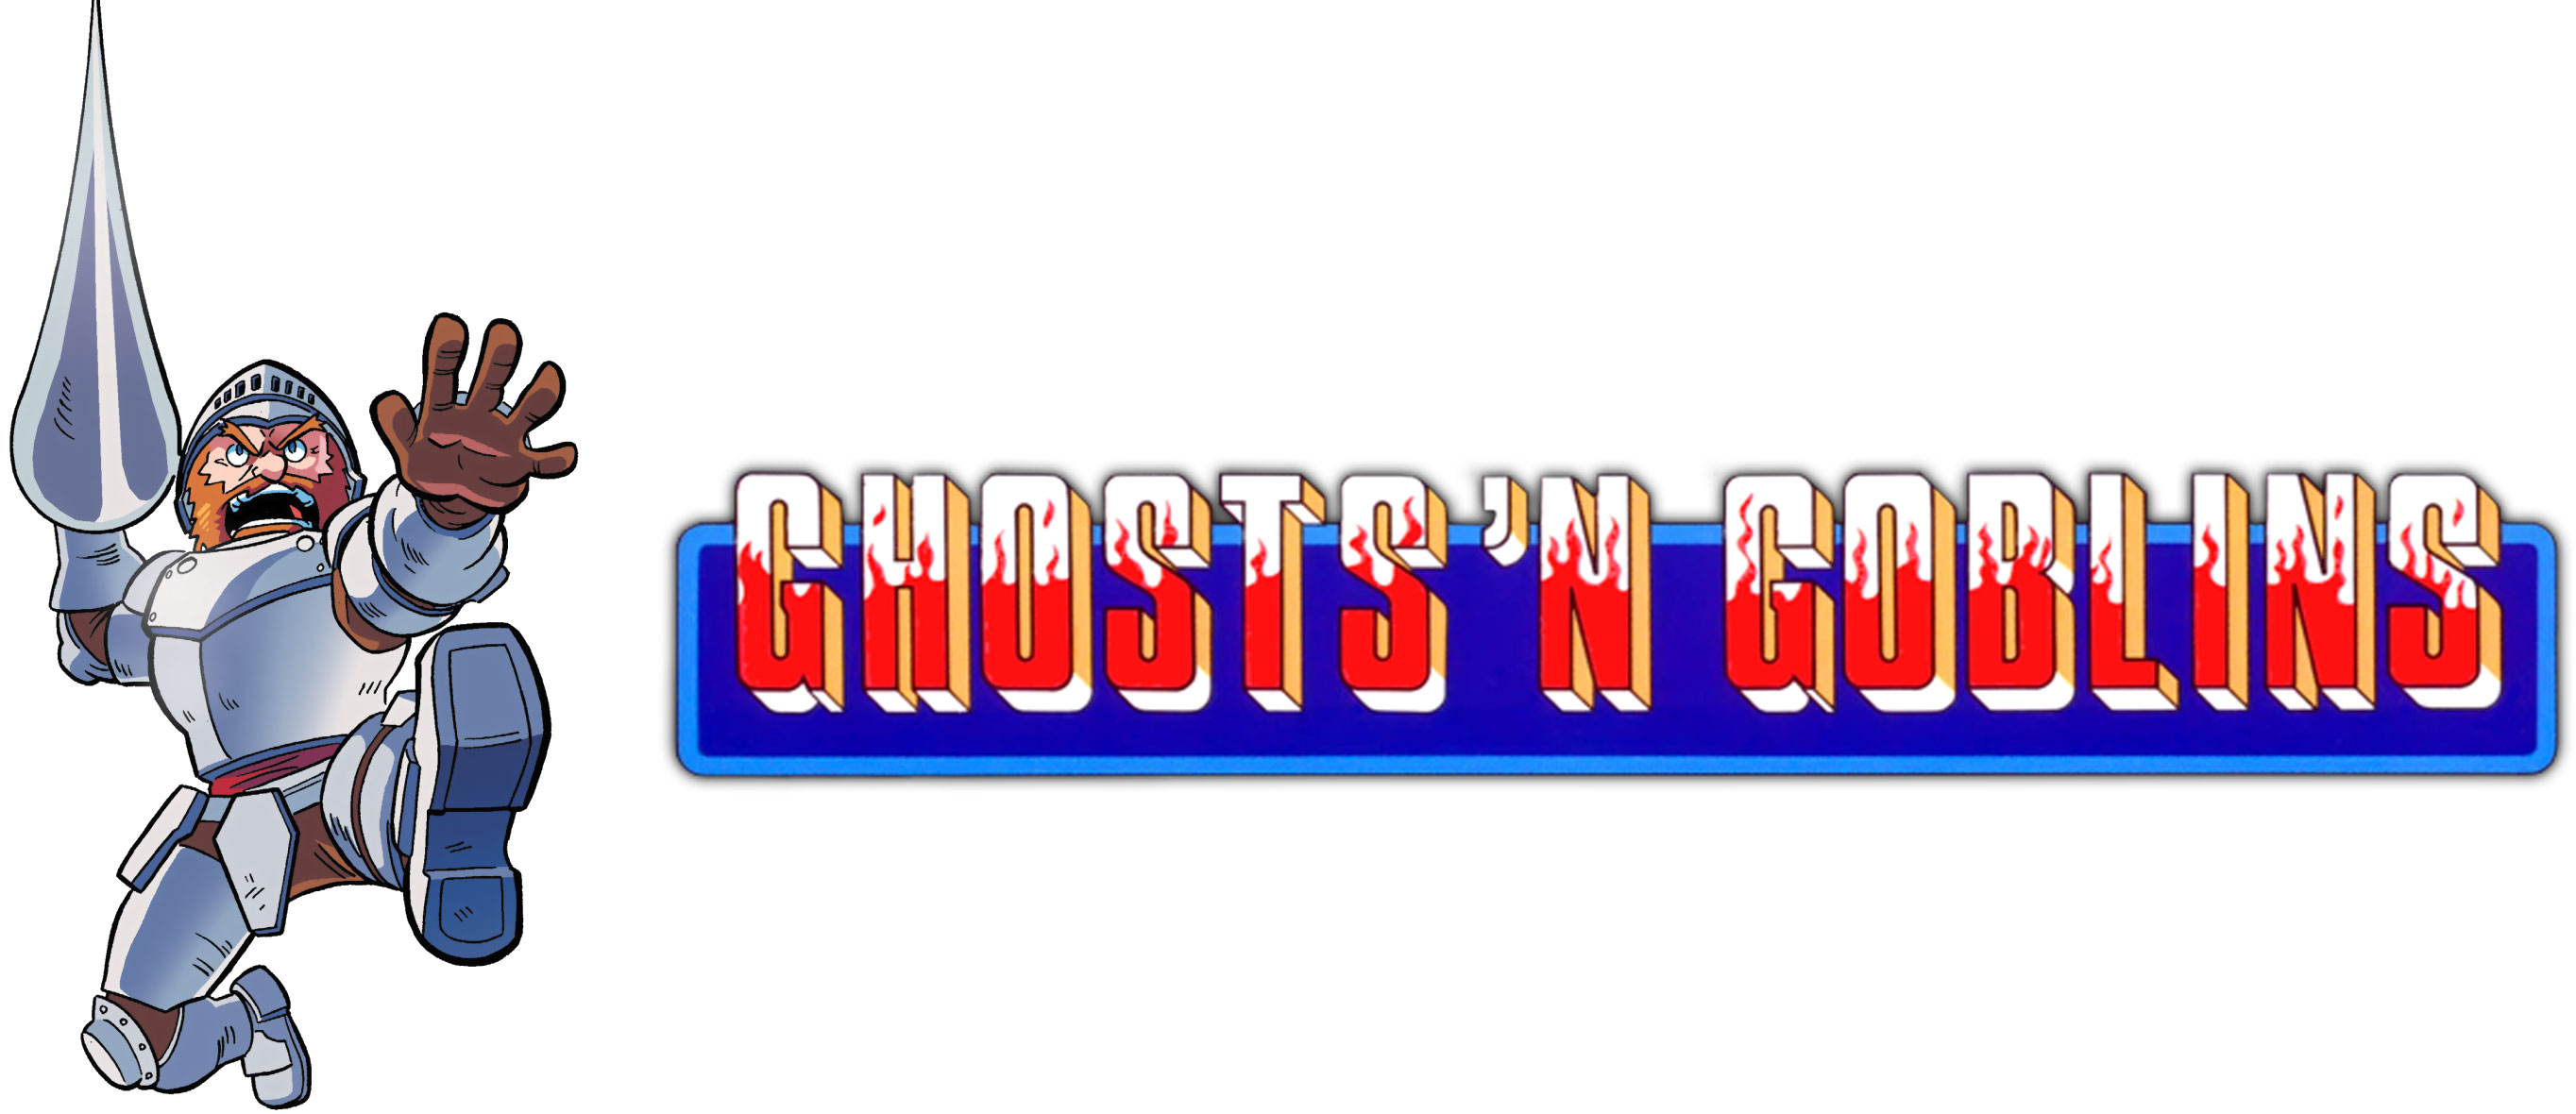 دانلود بازی Ghosts'n goblins mobile v1.00.02 برای آيفون ، آيپد و آيپاد لمسی